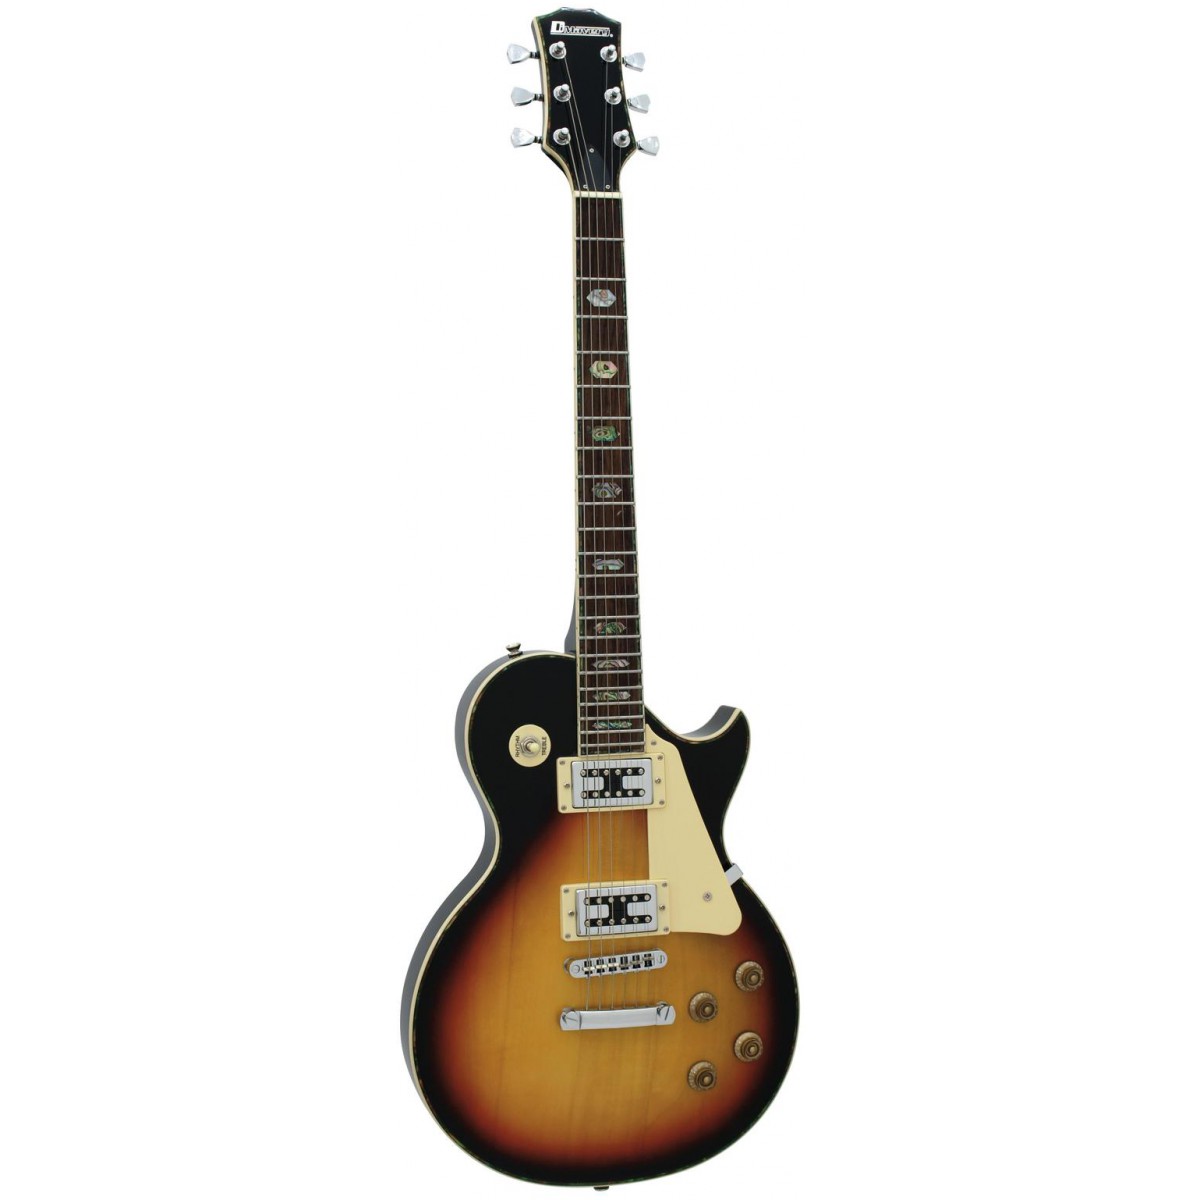 Dimavery elektrická kytara LP-700 elektrická kytara, sunburst